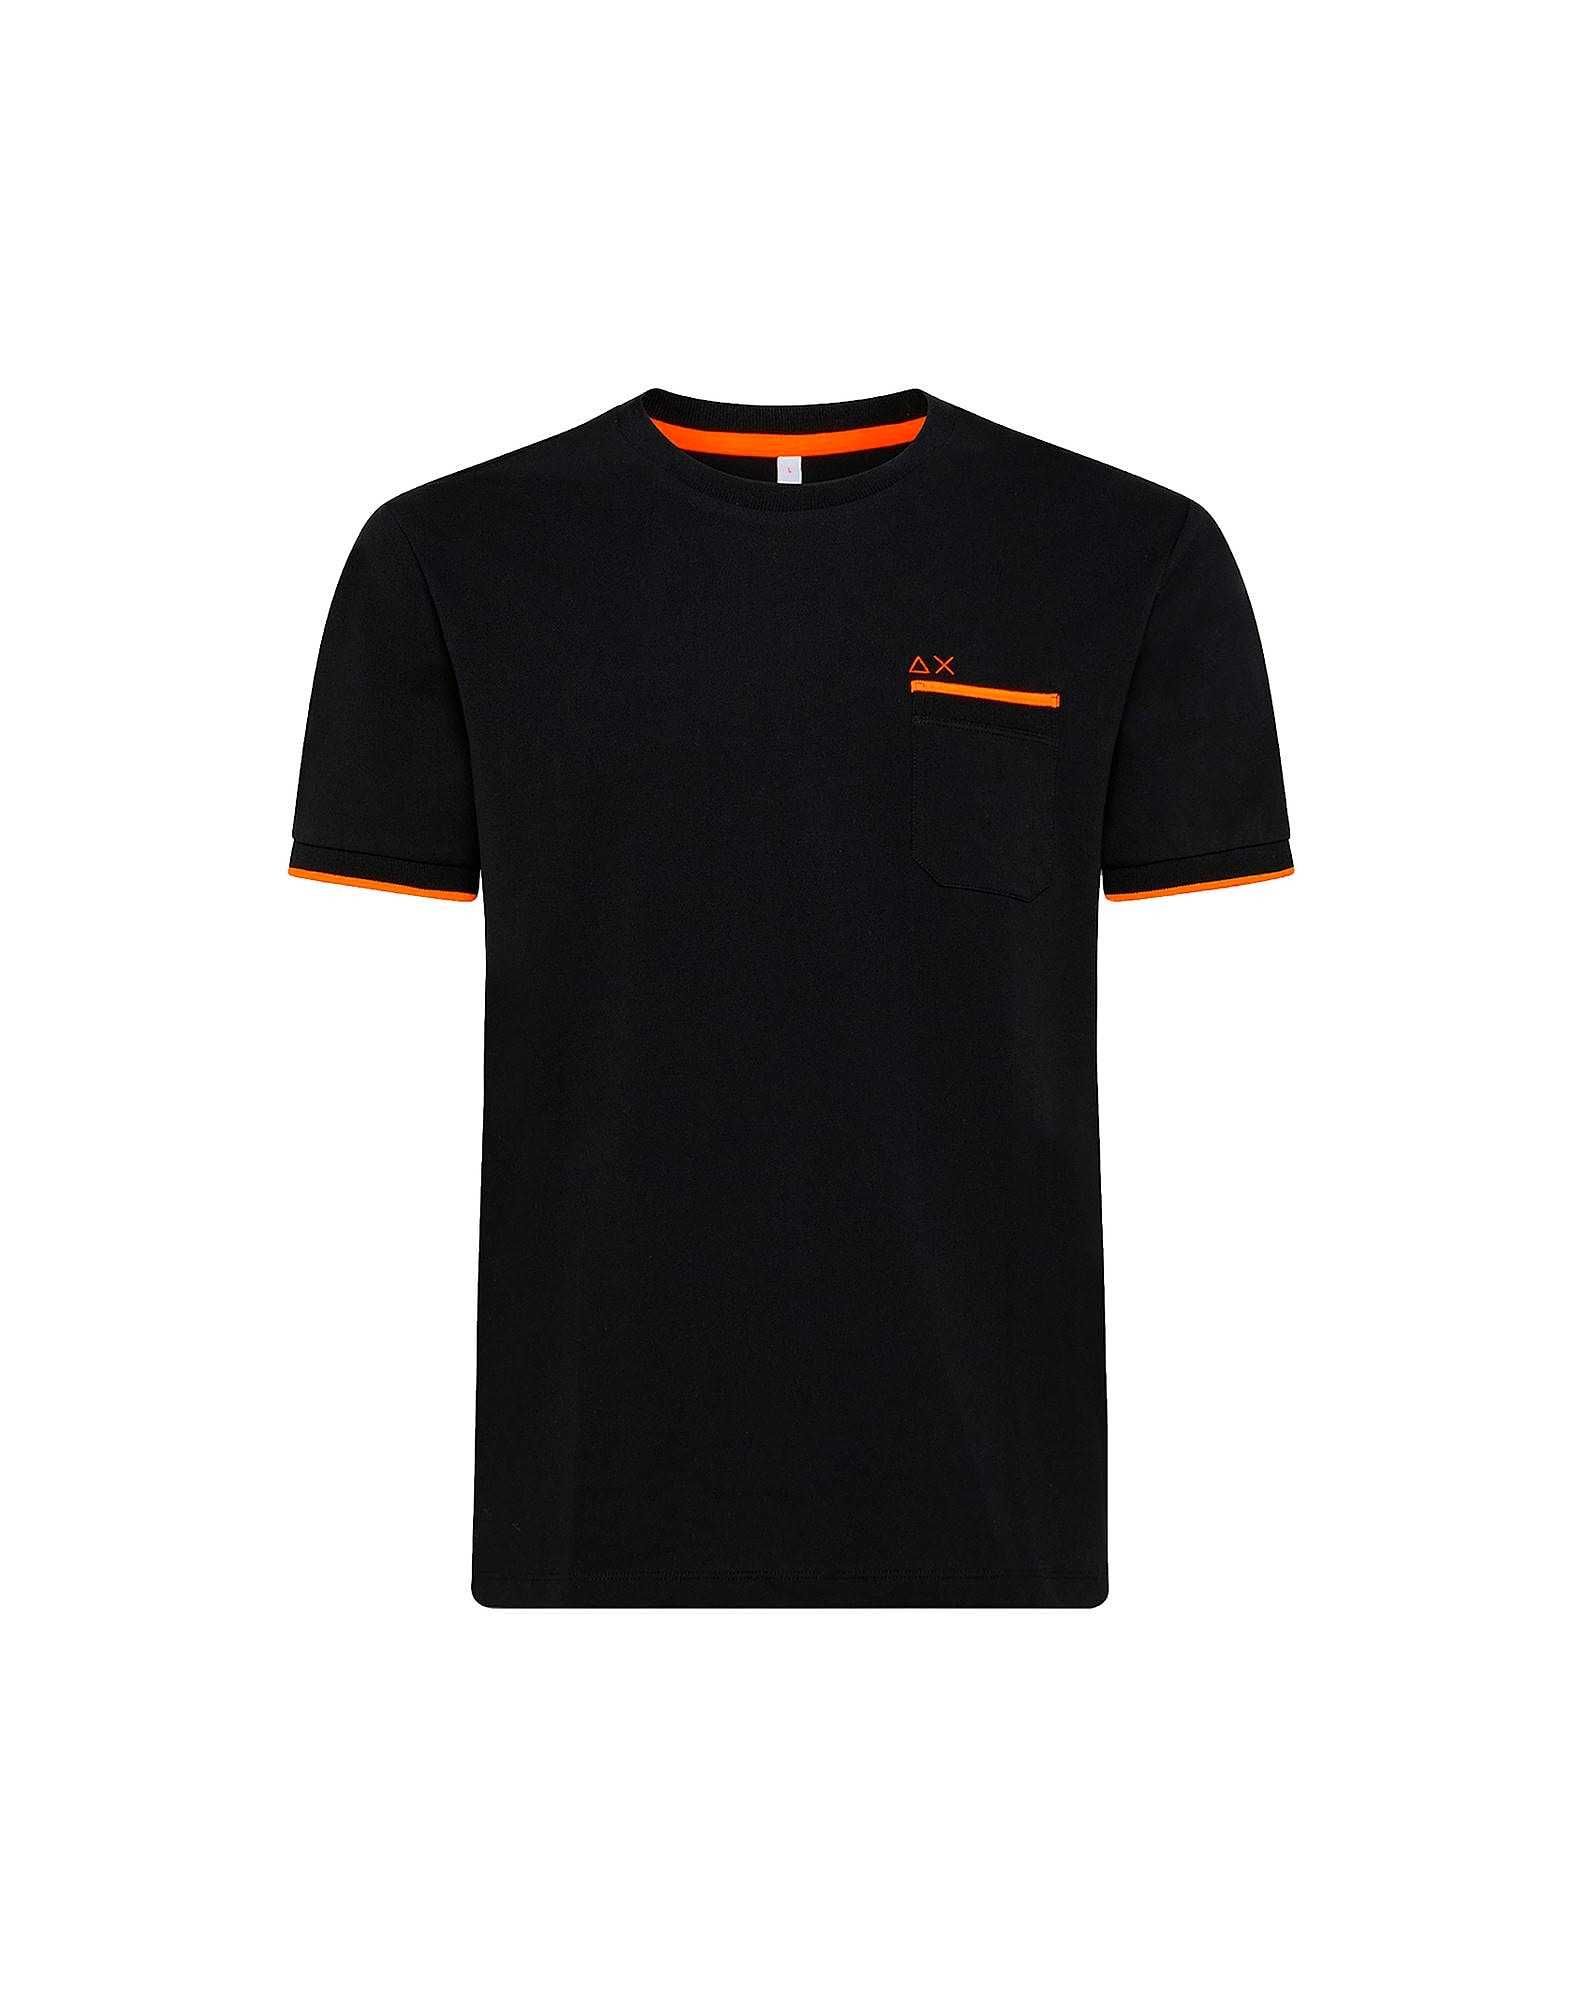 T Shirt SUN 68  - A ESTREAR com etiqueta da marca - Tamanho  XL/Preto